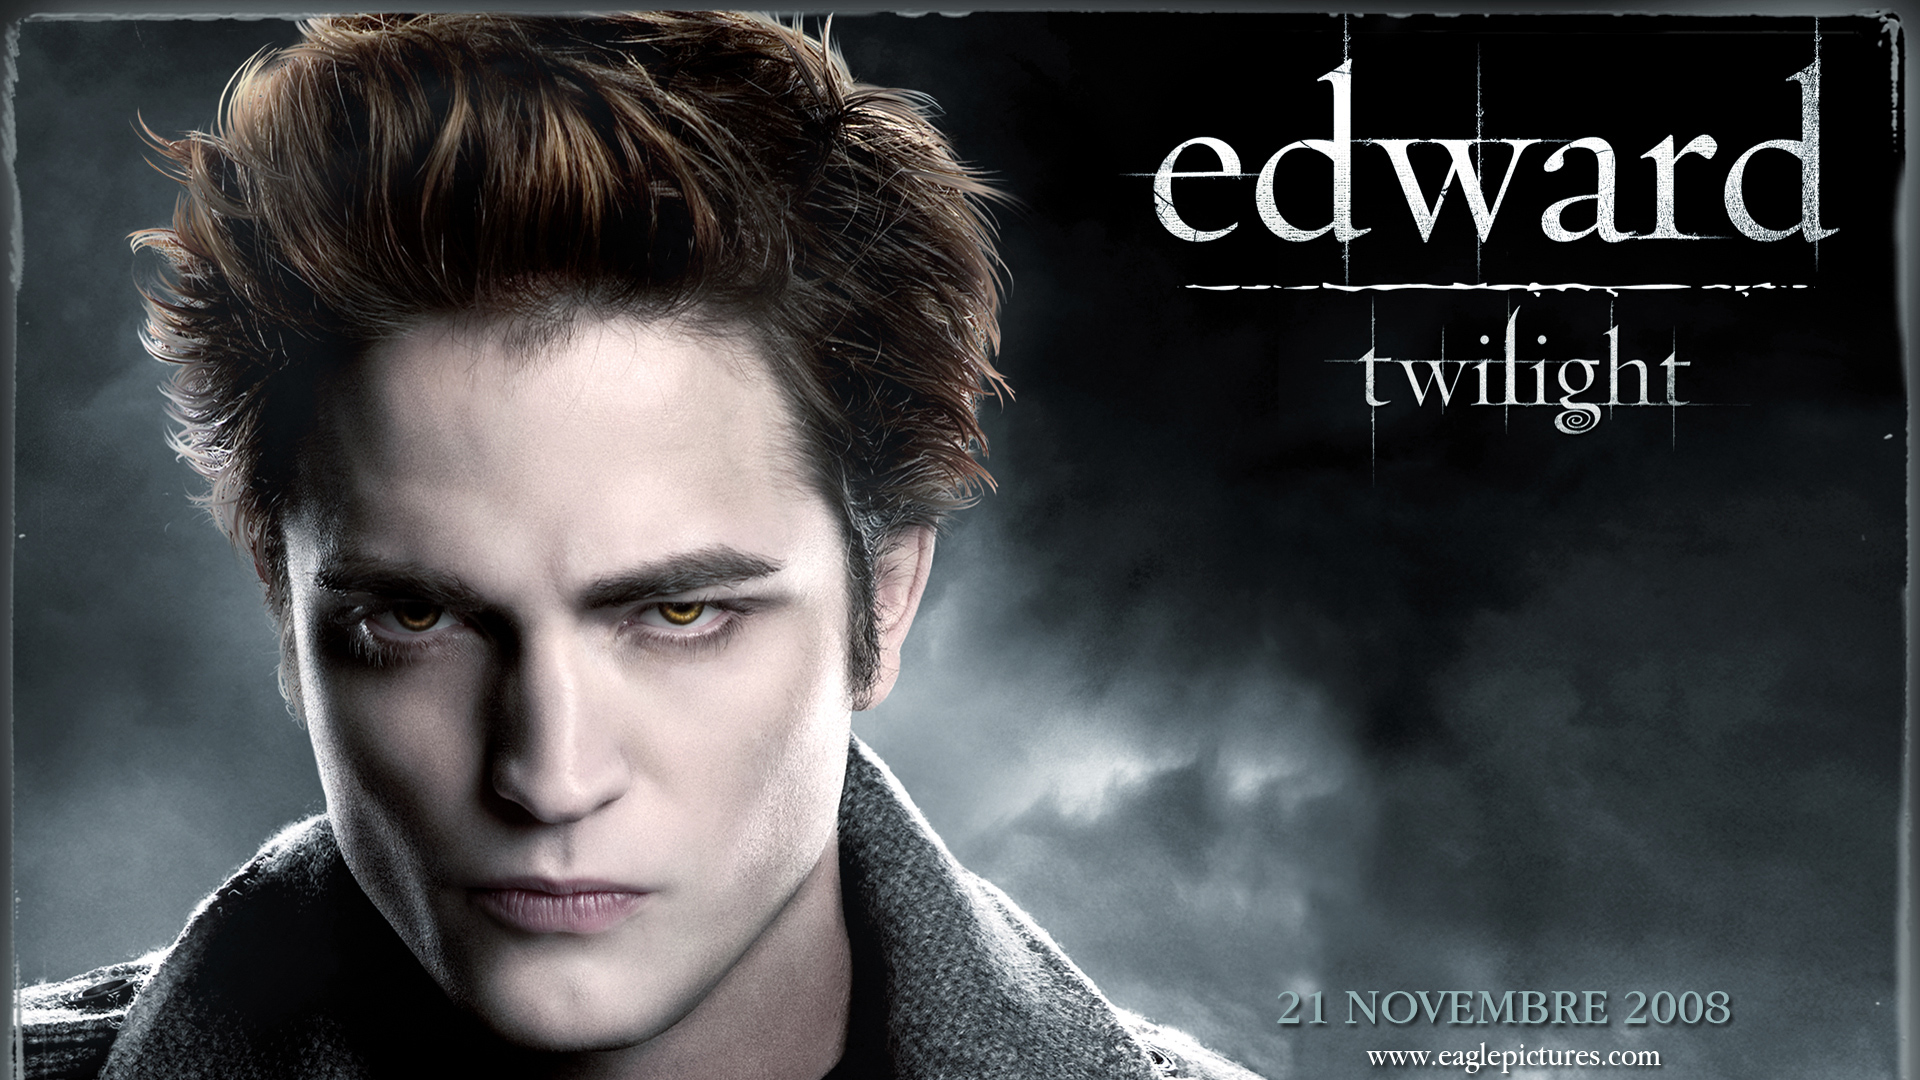 The Twilight Saga Breaking Dawn Windows Theme And Wallpaper